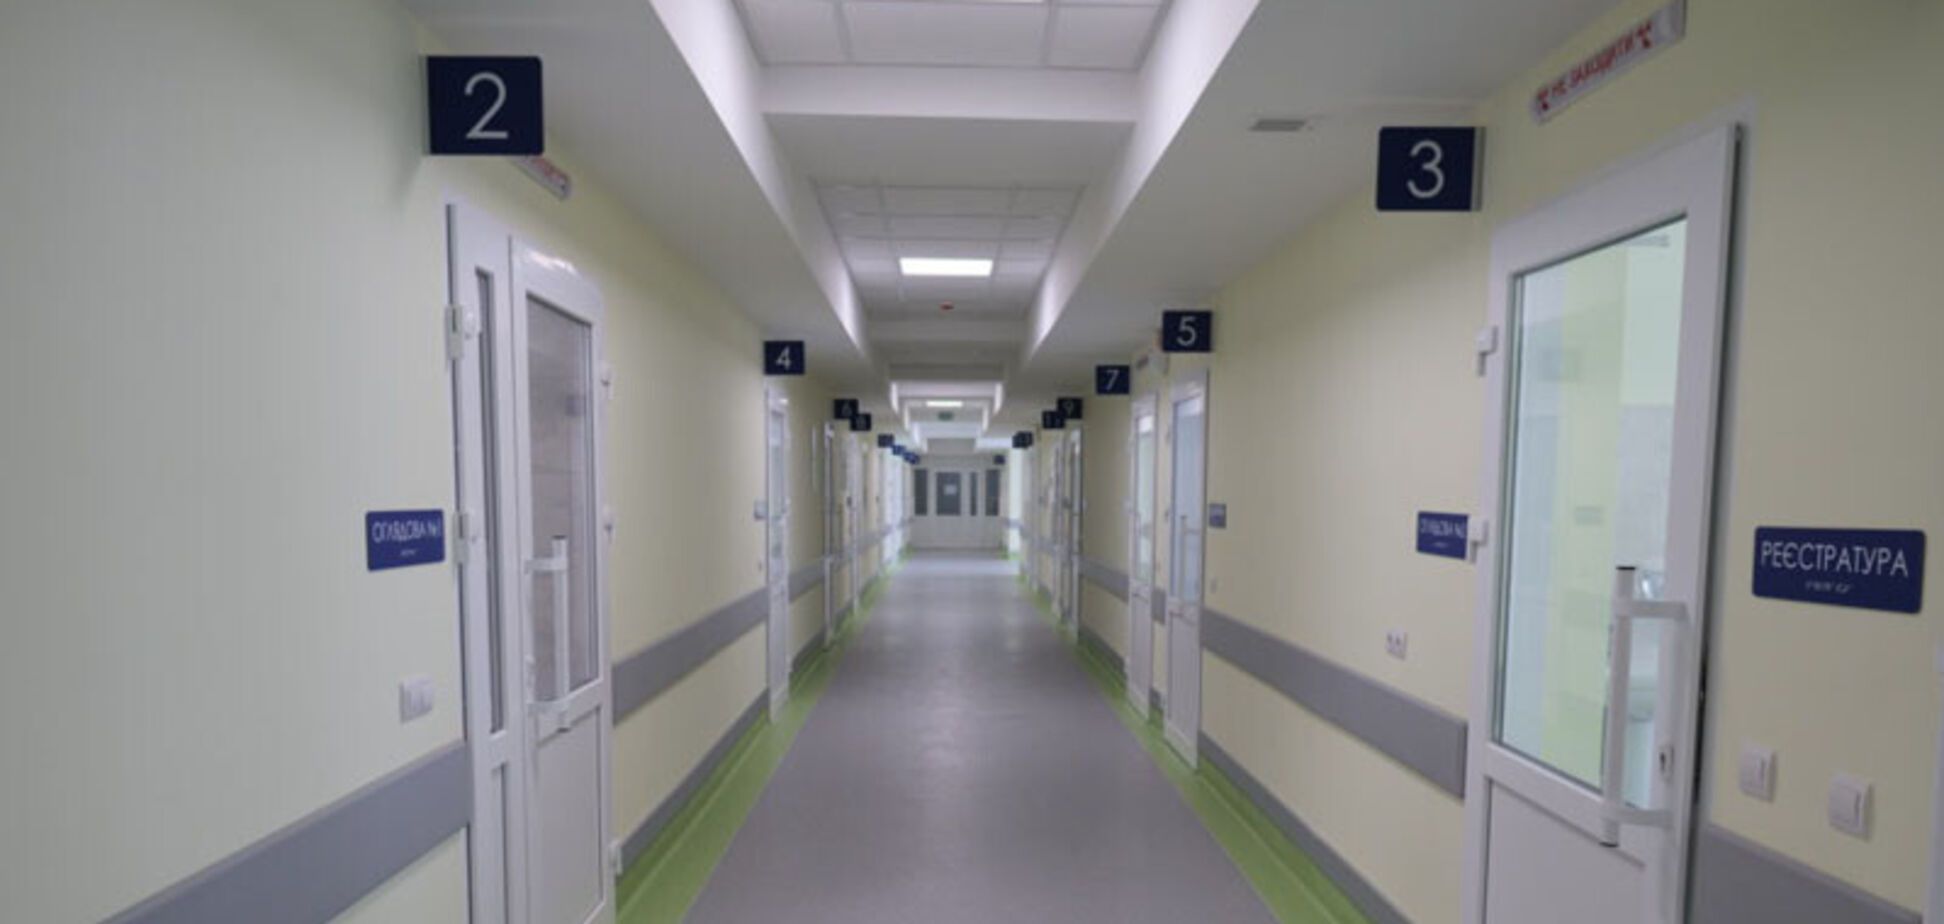 'Велике будівництво': в Умані відкрили оновлене приймальне відділення лікарні, яка обслуговує 240 тис. осіб